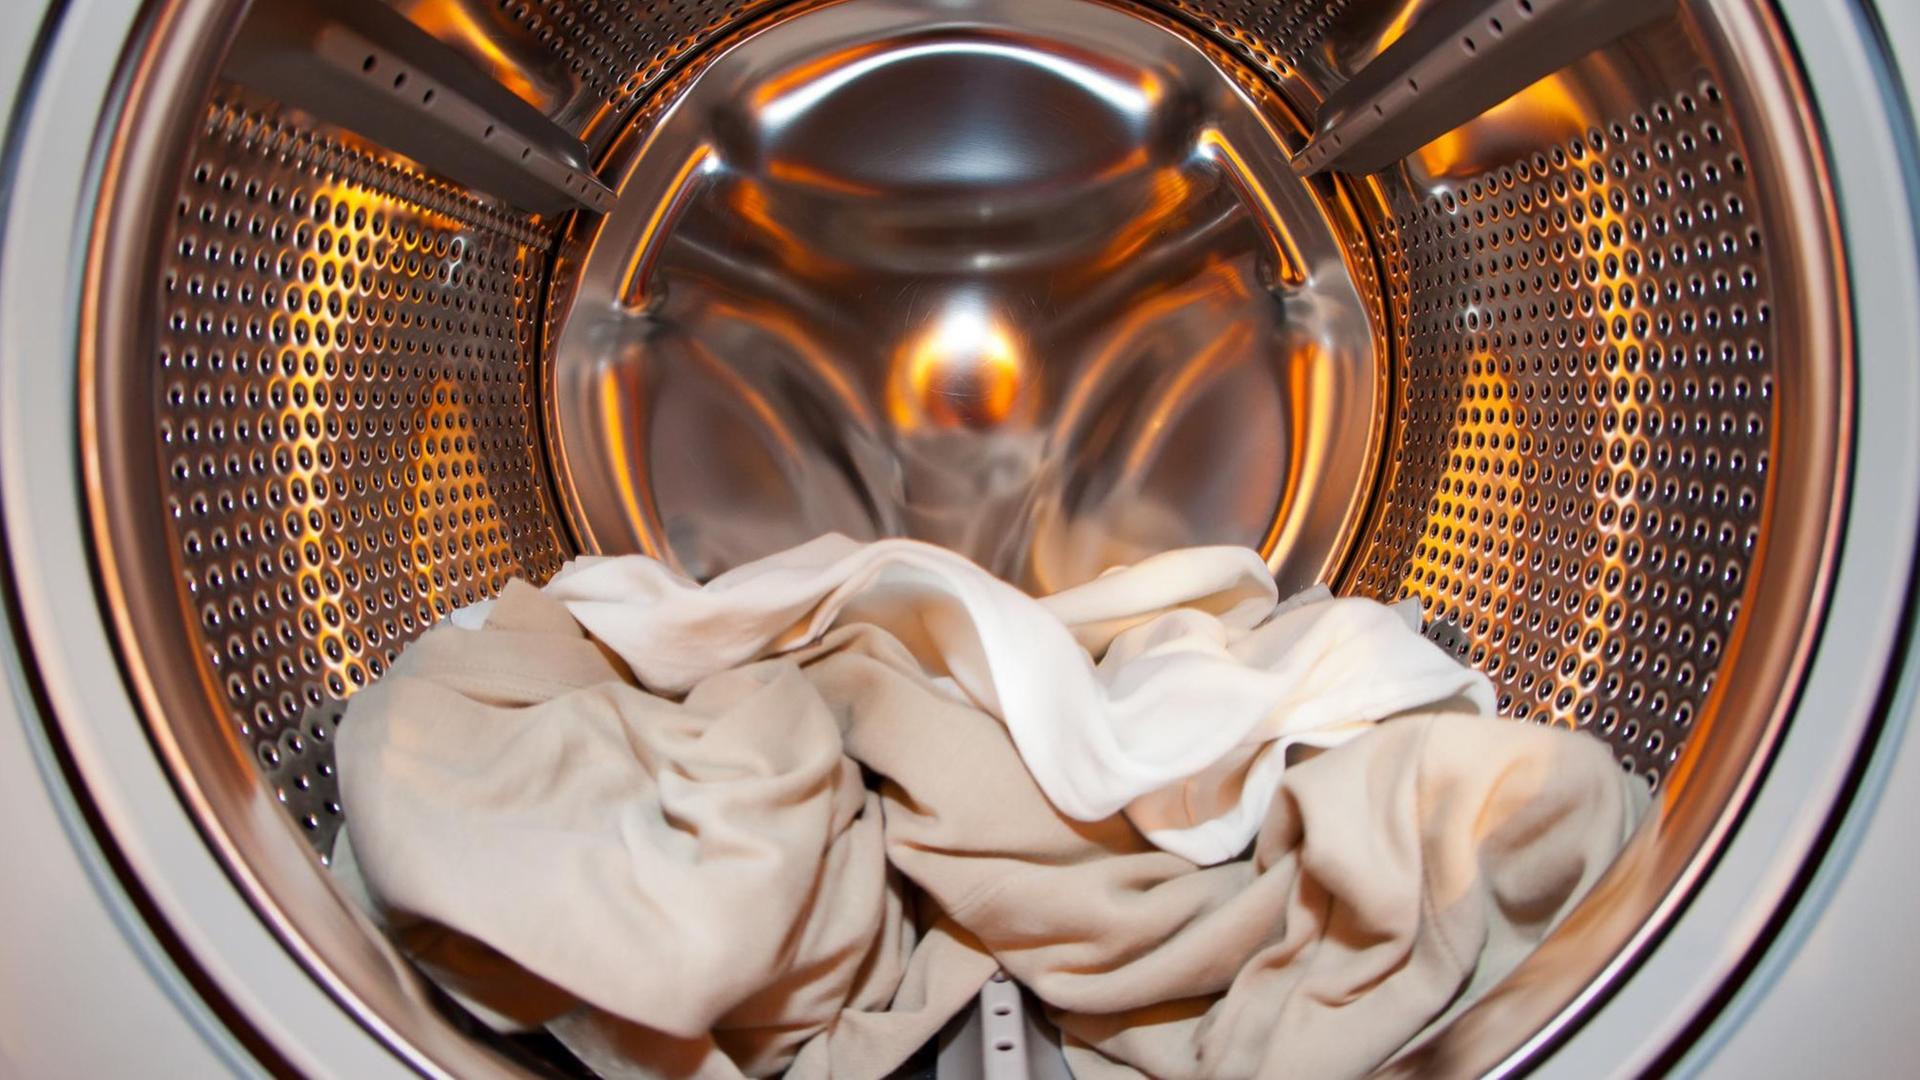 In der Waschtrommel einer Waschmaschine liegen Kleidungsstücke, aufgenommen am 11.01.2012 in Nürnberg (Mittelfranken).